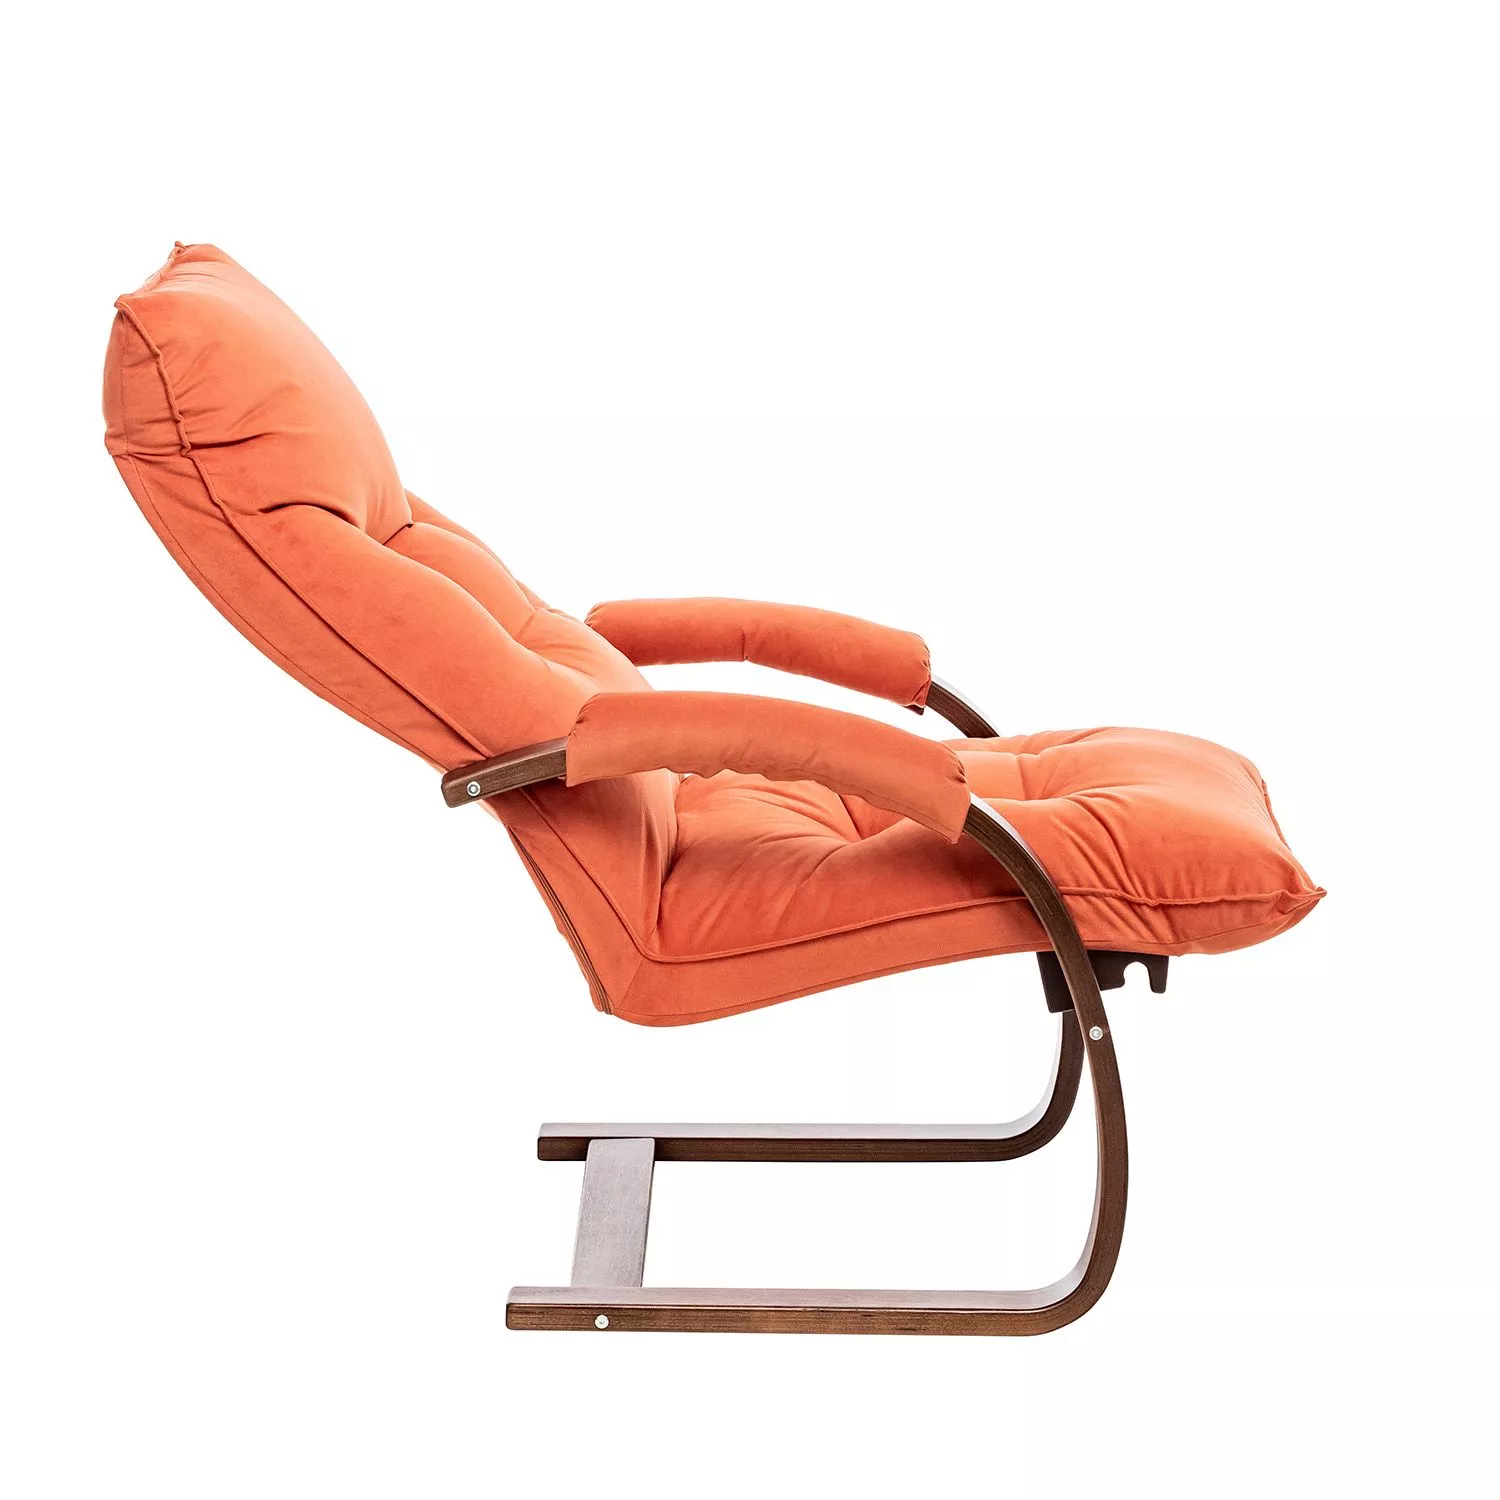 Кресло-трансформер Монако V39 оранжевый / Орех текстура